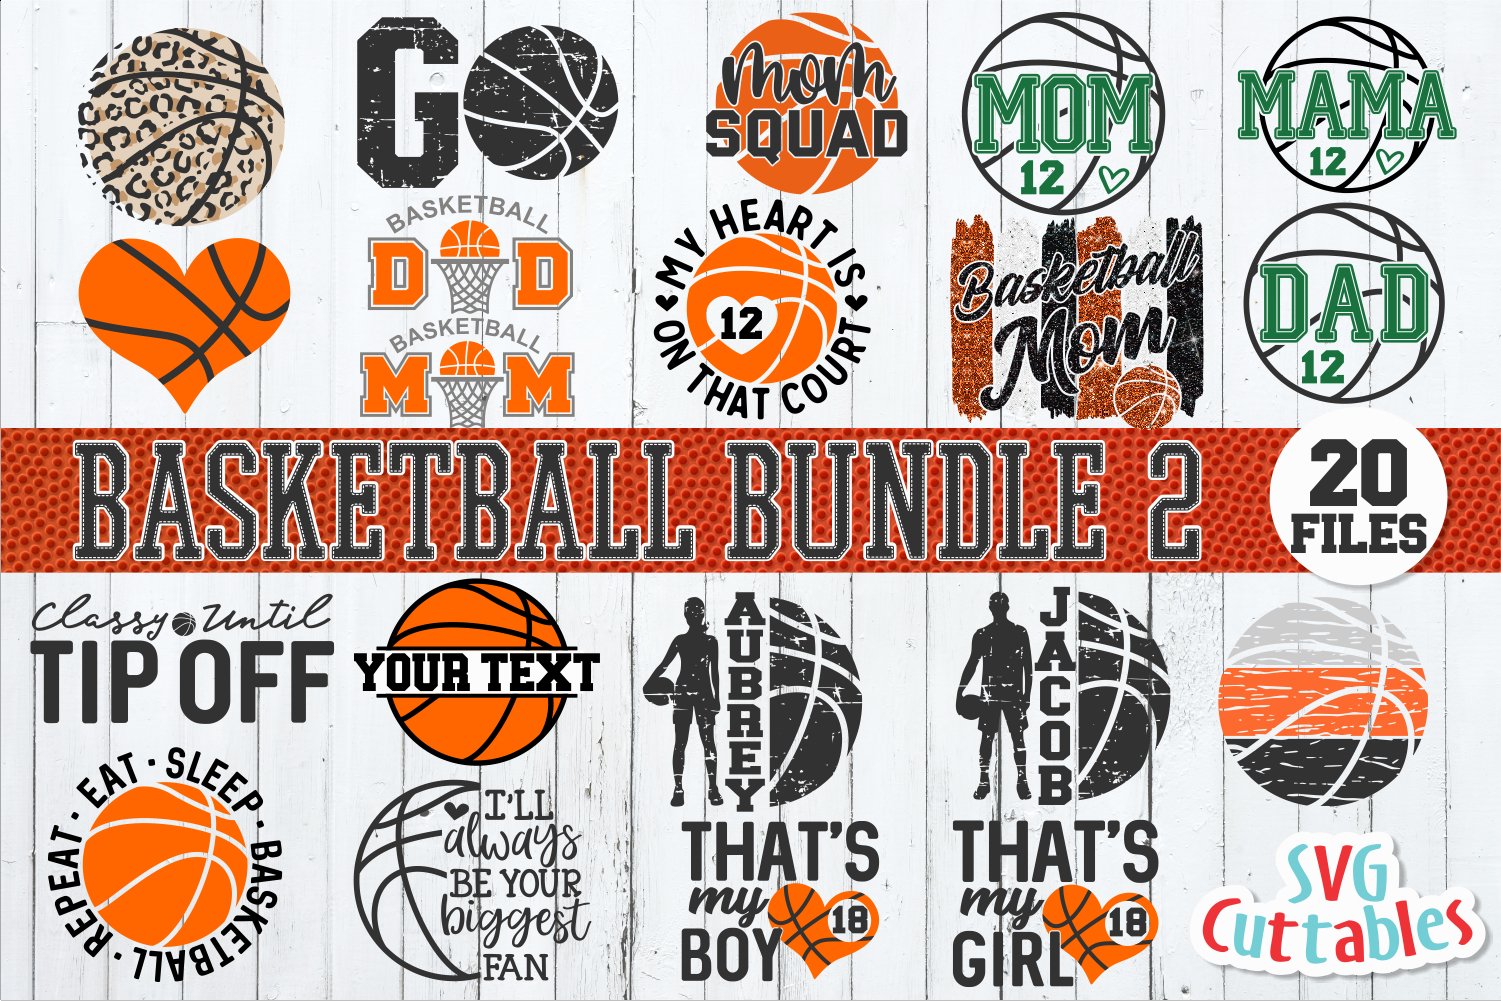 Various basketball logos.